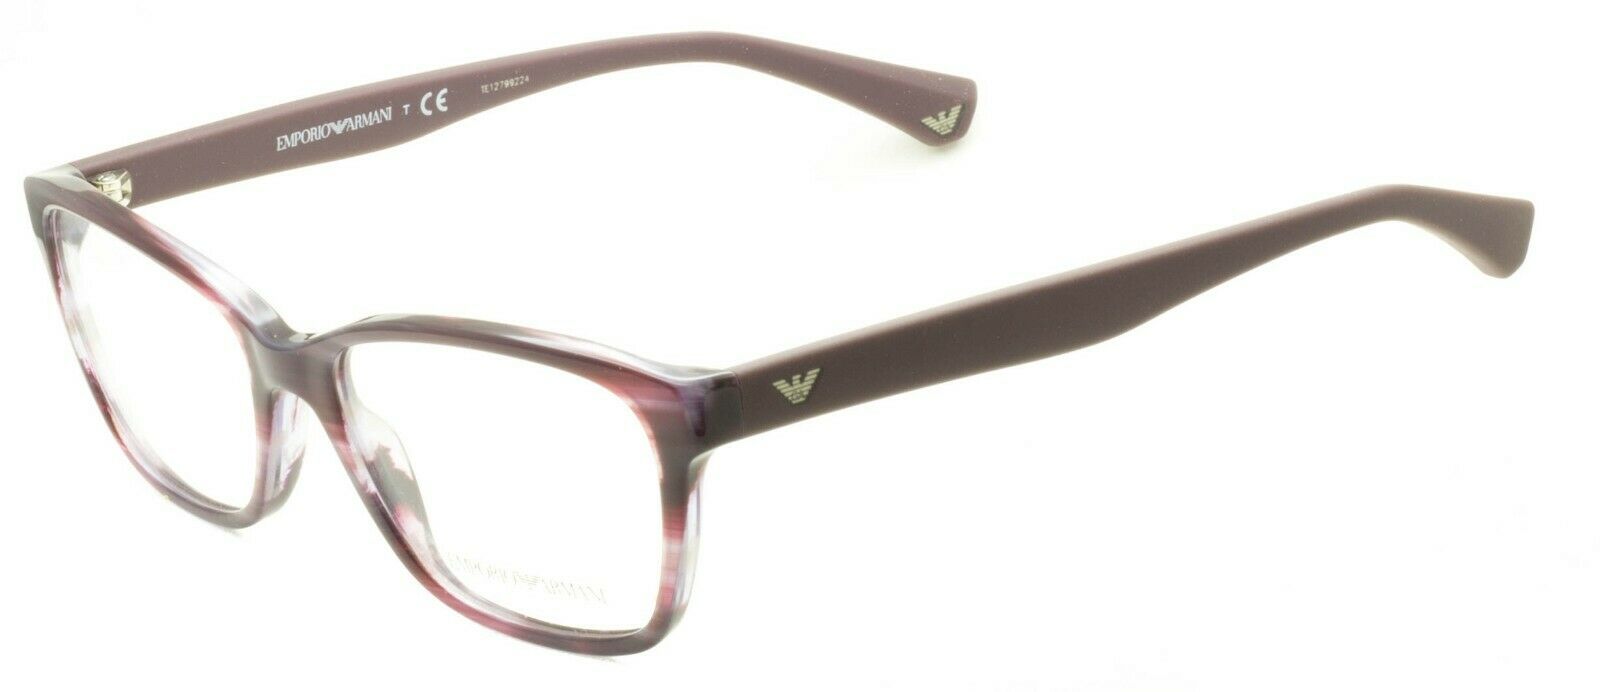 EMPORIO ARMANI EA 3060 5389 52mm Eyewear FRAMES RX Optical Glasses EyeglassesNew